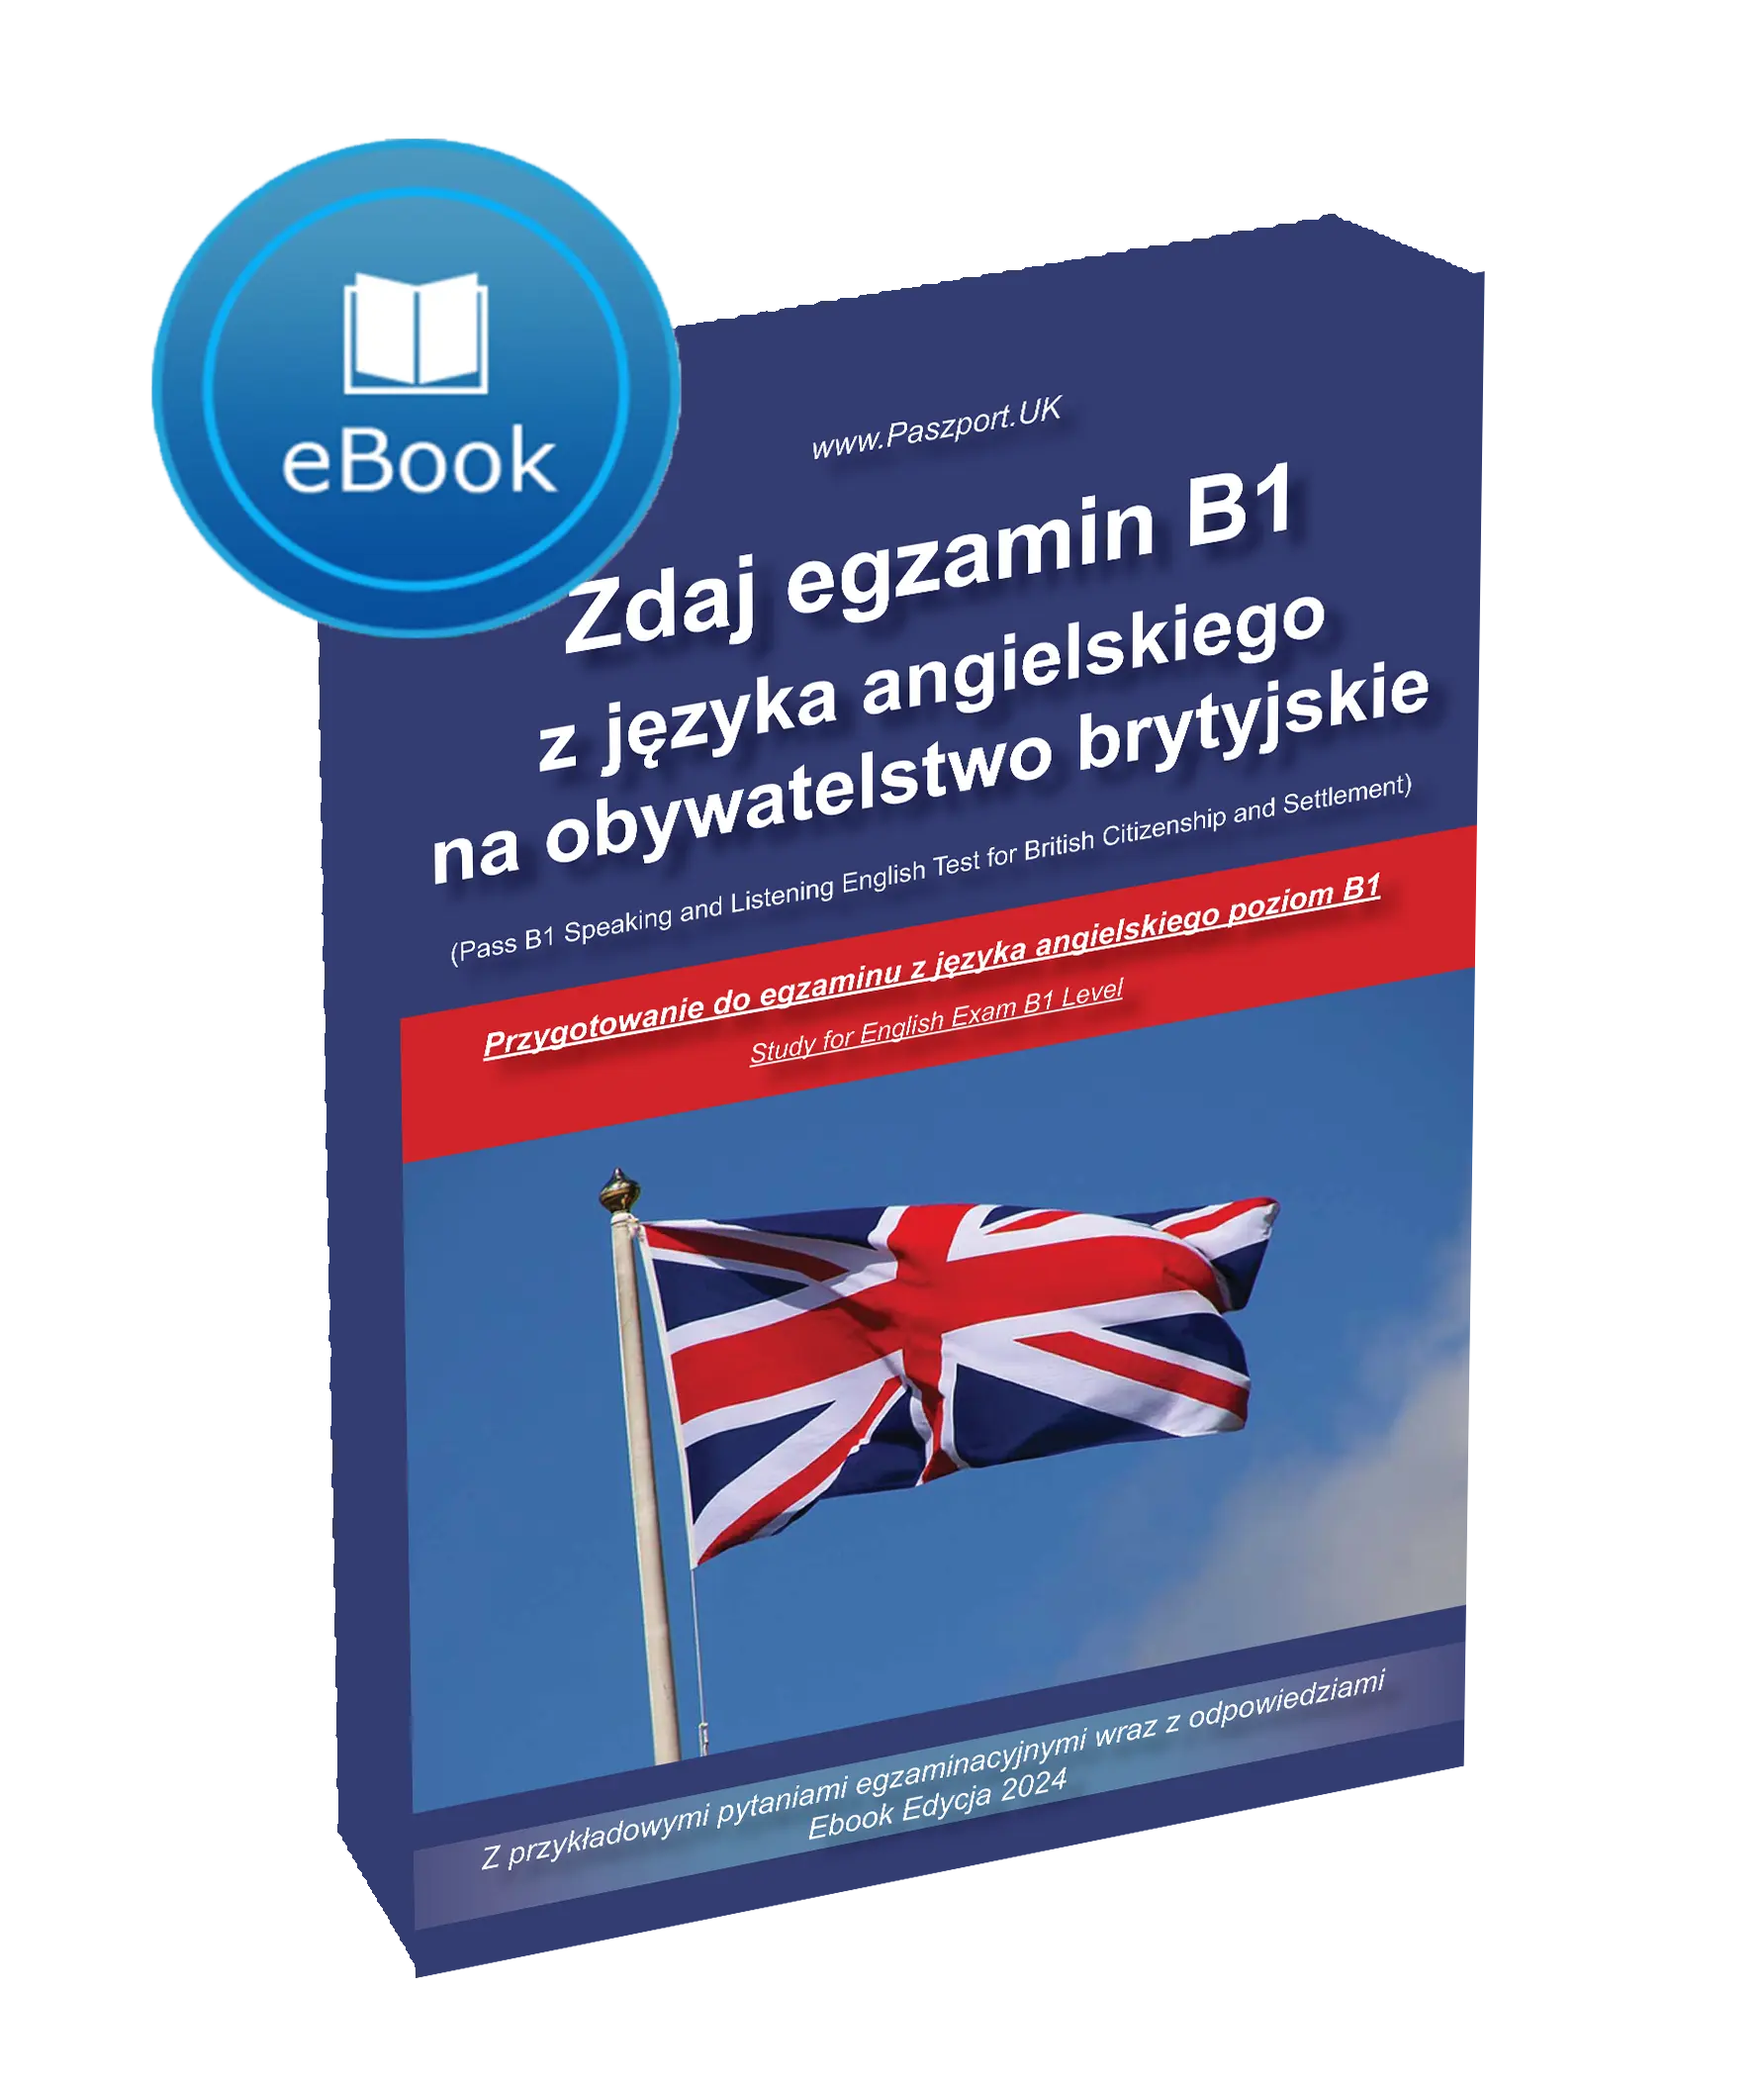 Apka podręcznik jak zdac egzamin językowy B1 Selt obywatelstwo UK